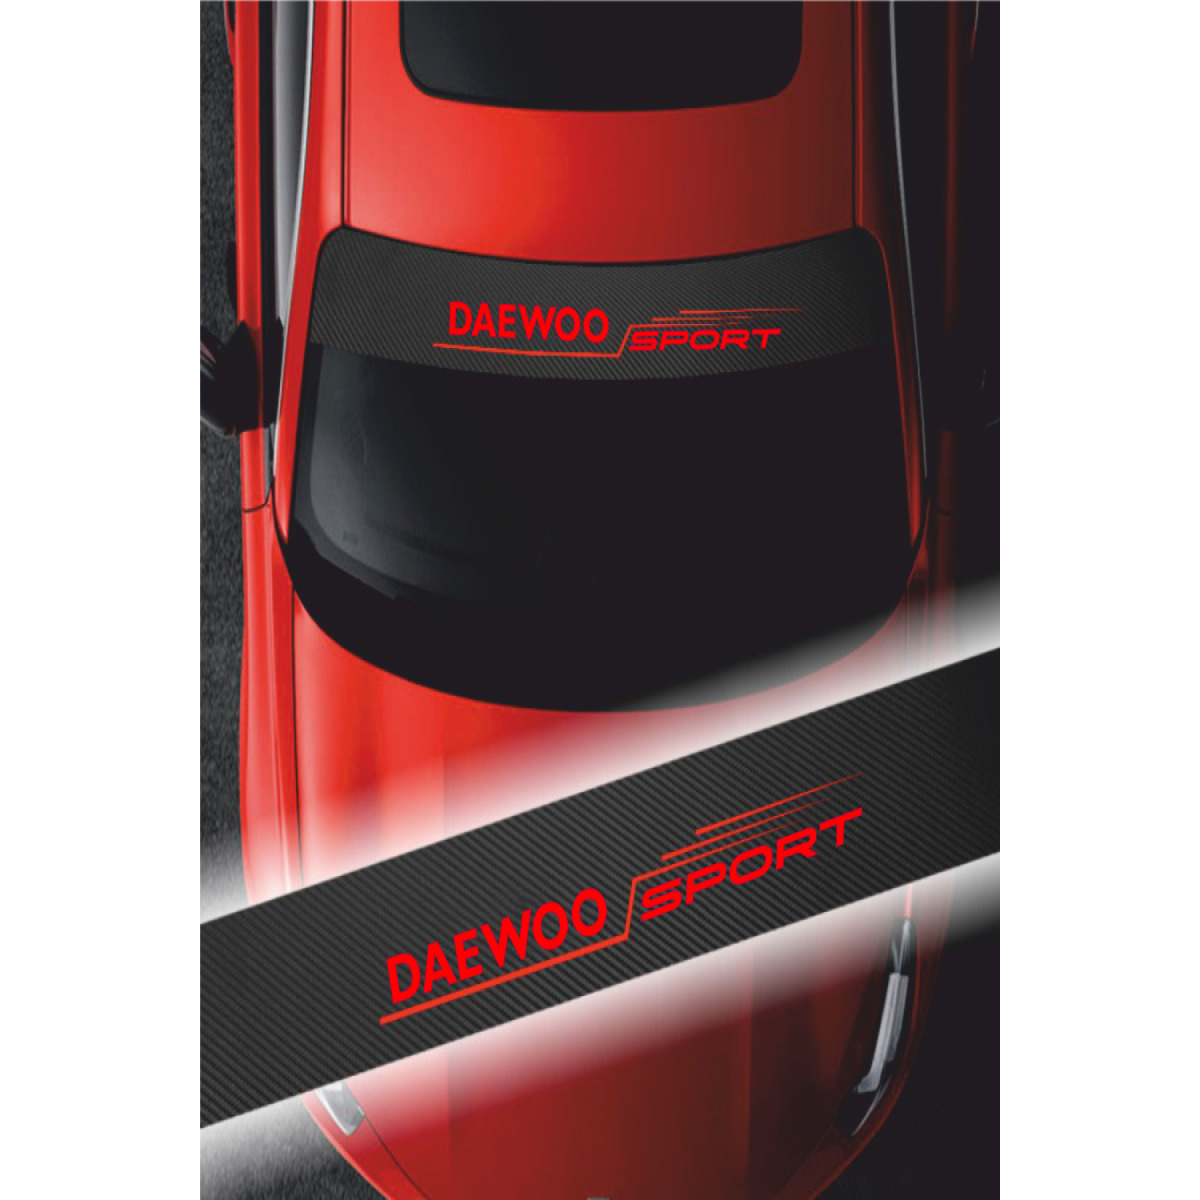 Daewoo Matiz İçin Uyumlu Aksesuar Oto Ön Cam Sticker